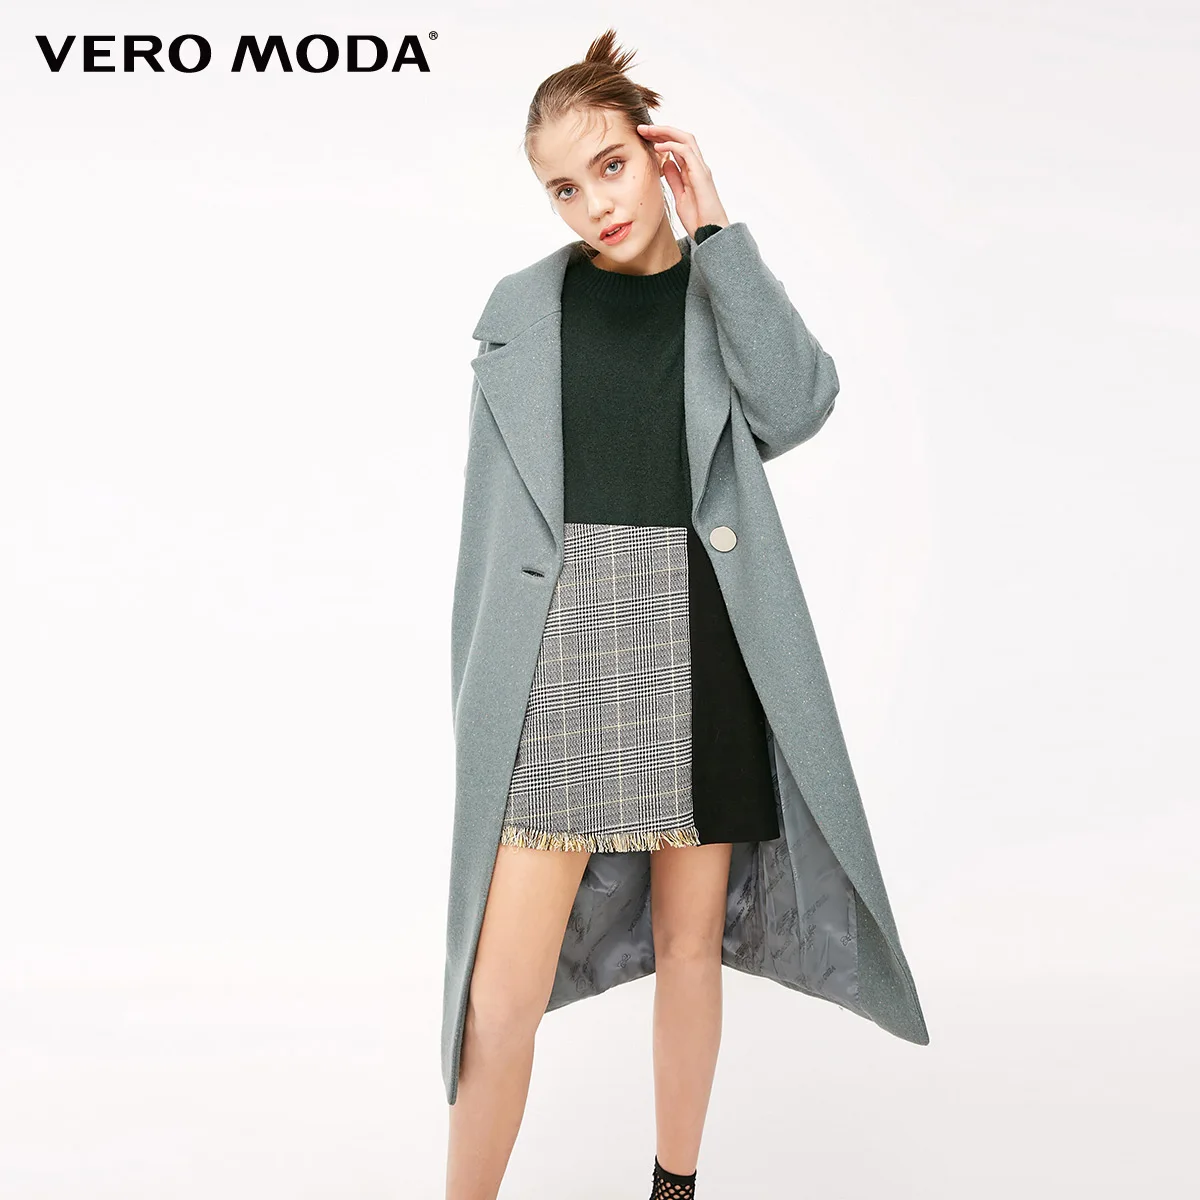 Vero Moda пальто женское Женское шерстяное пальто на пуговицах с отворотом и укороченным рукавом | 318327509 - Цвет: Balsam green mel.